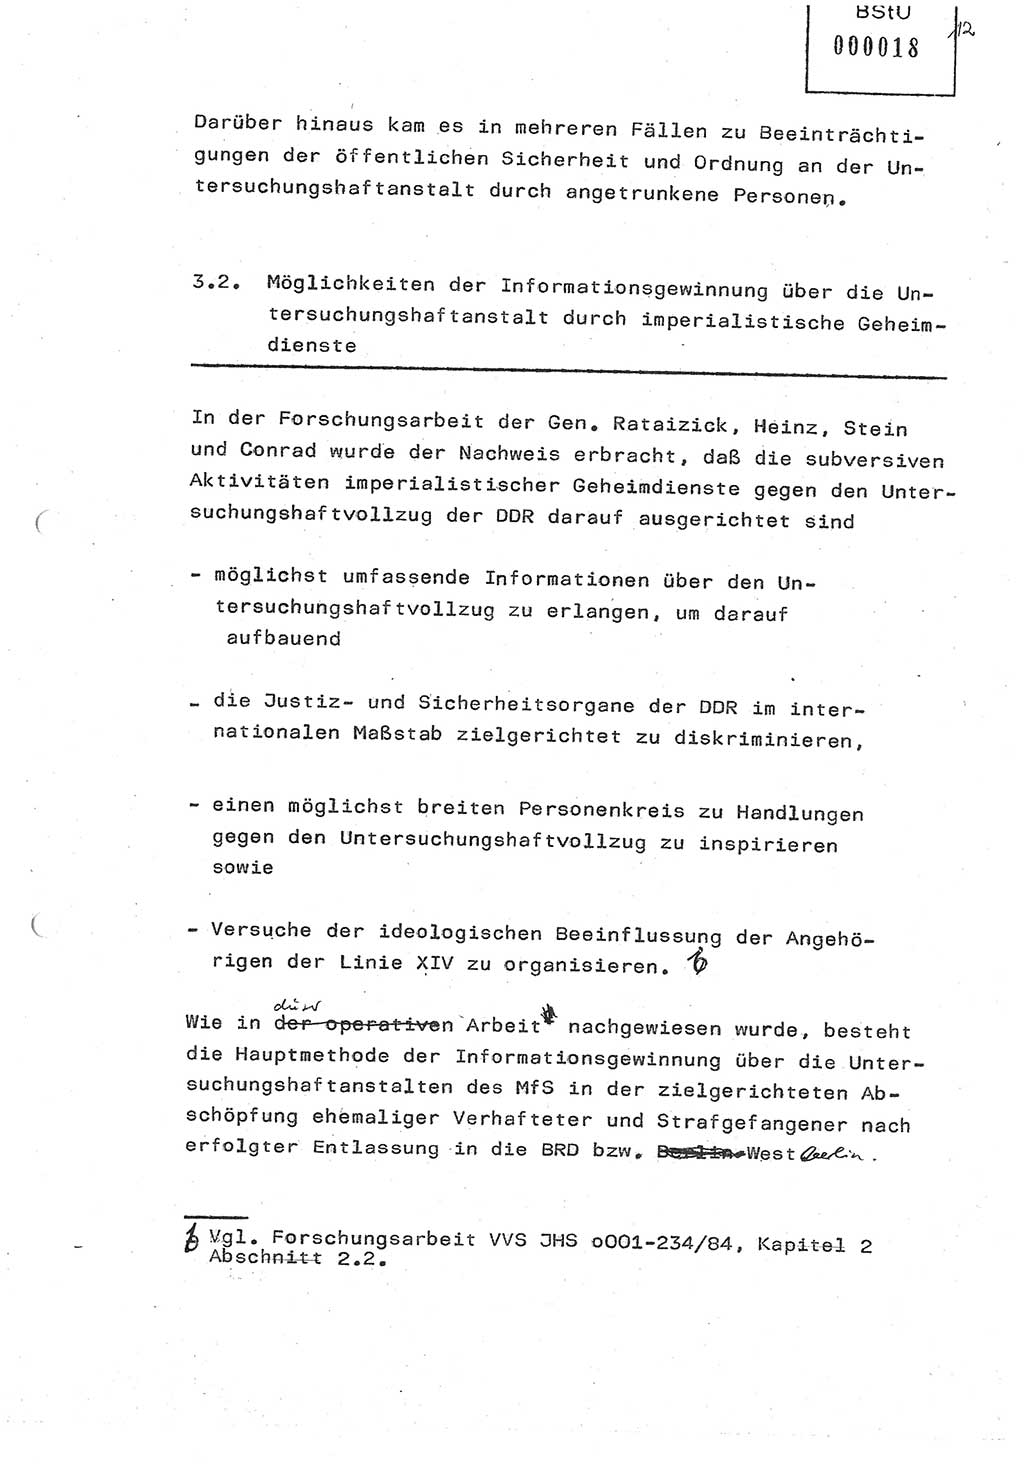 Diplomarbeit (Entwurf) Oberleutnant Peter Parke (Abt. ⅩⅣ), Ministerium für Staatssicherheit (MfS) [Deutsche Demokratische Republik (DDR)], Juristische Hochschule (JHS), Geheime Verschlußsache (GVS) o001-98/86, Potsdam 1986, Seite 18 (Dipl.-Arb. MfS DDR JHS GVS o001-98/86 1986, S. 18)